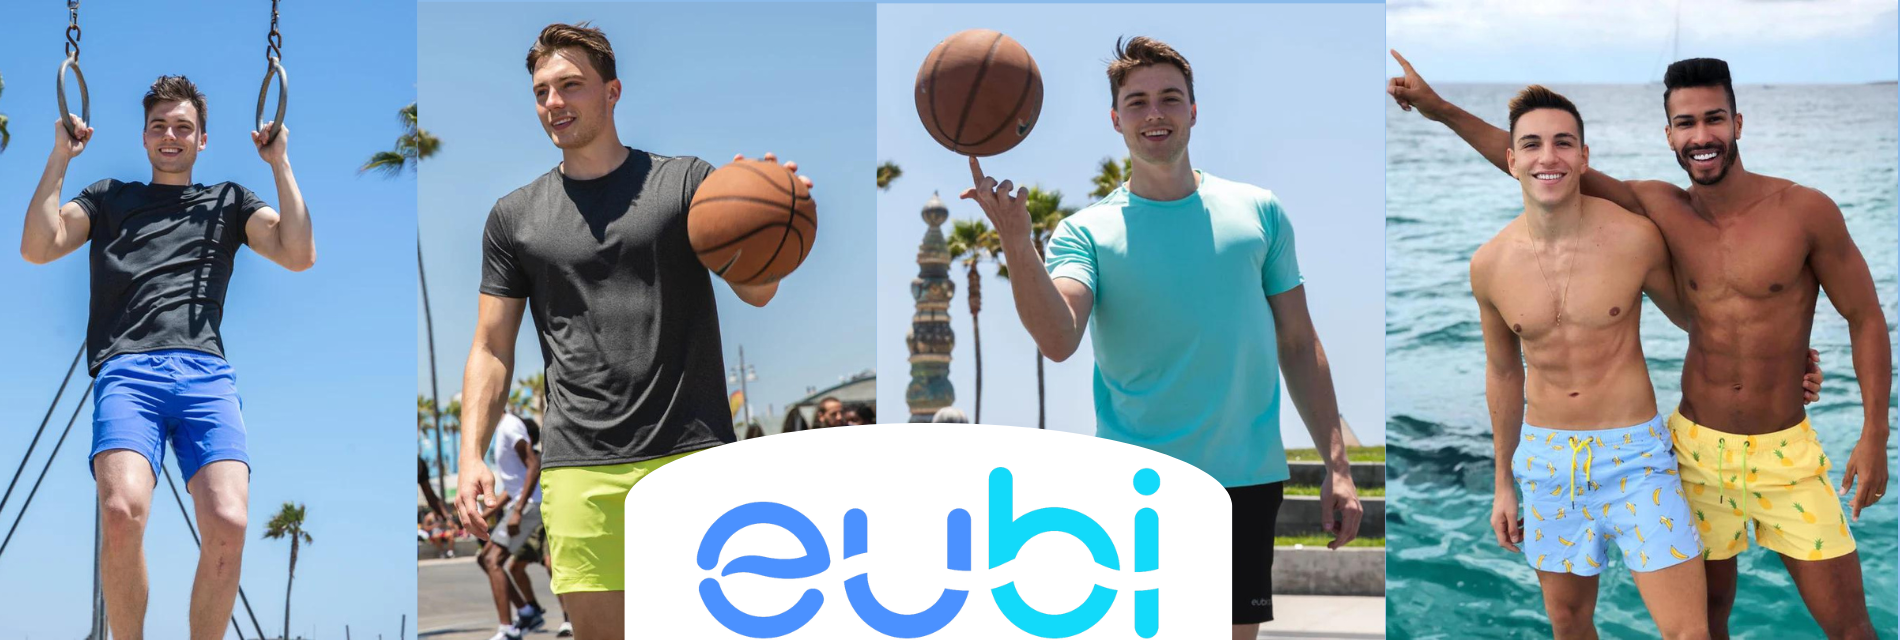 Eubi | Swim Wear for Men, Mens activewear, Sports Wear Brand